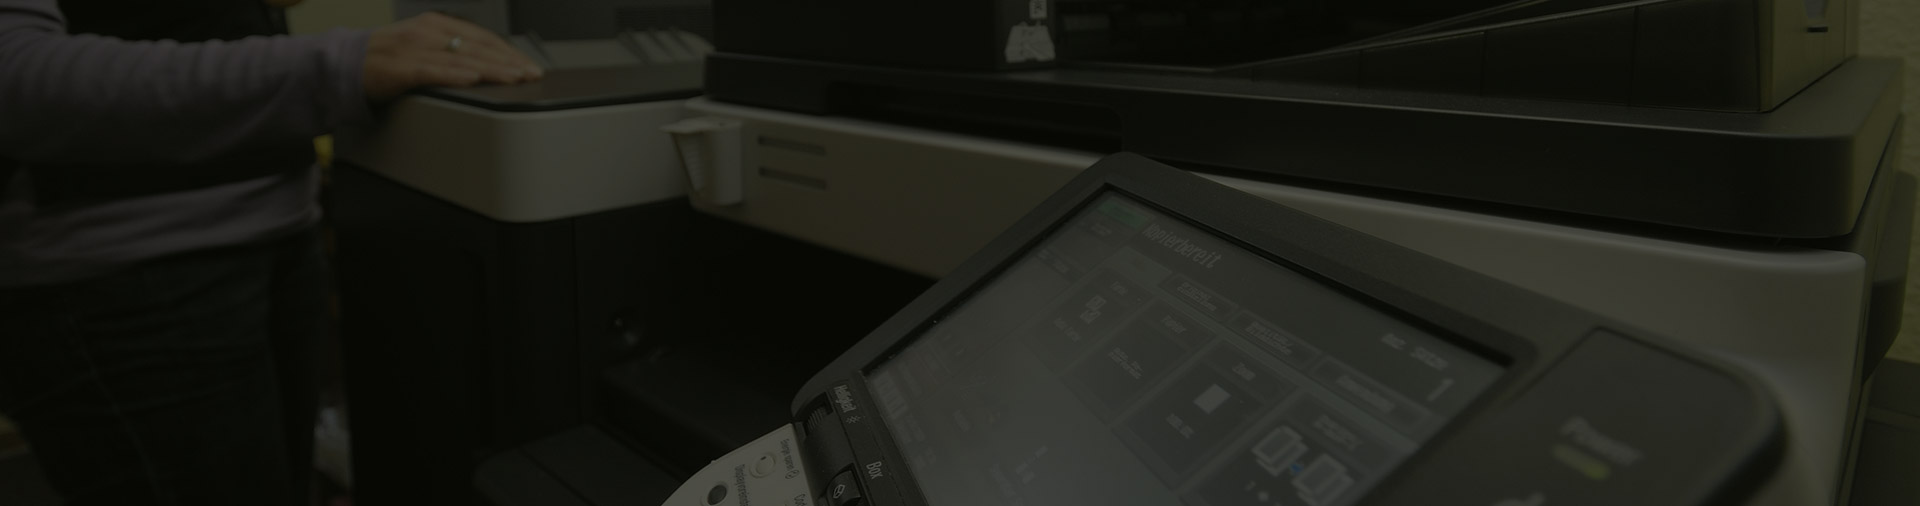 Bild eines Digitaldruckers